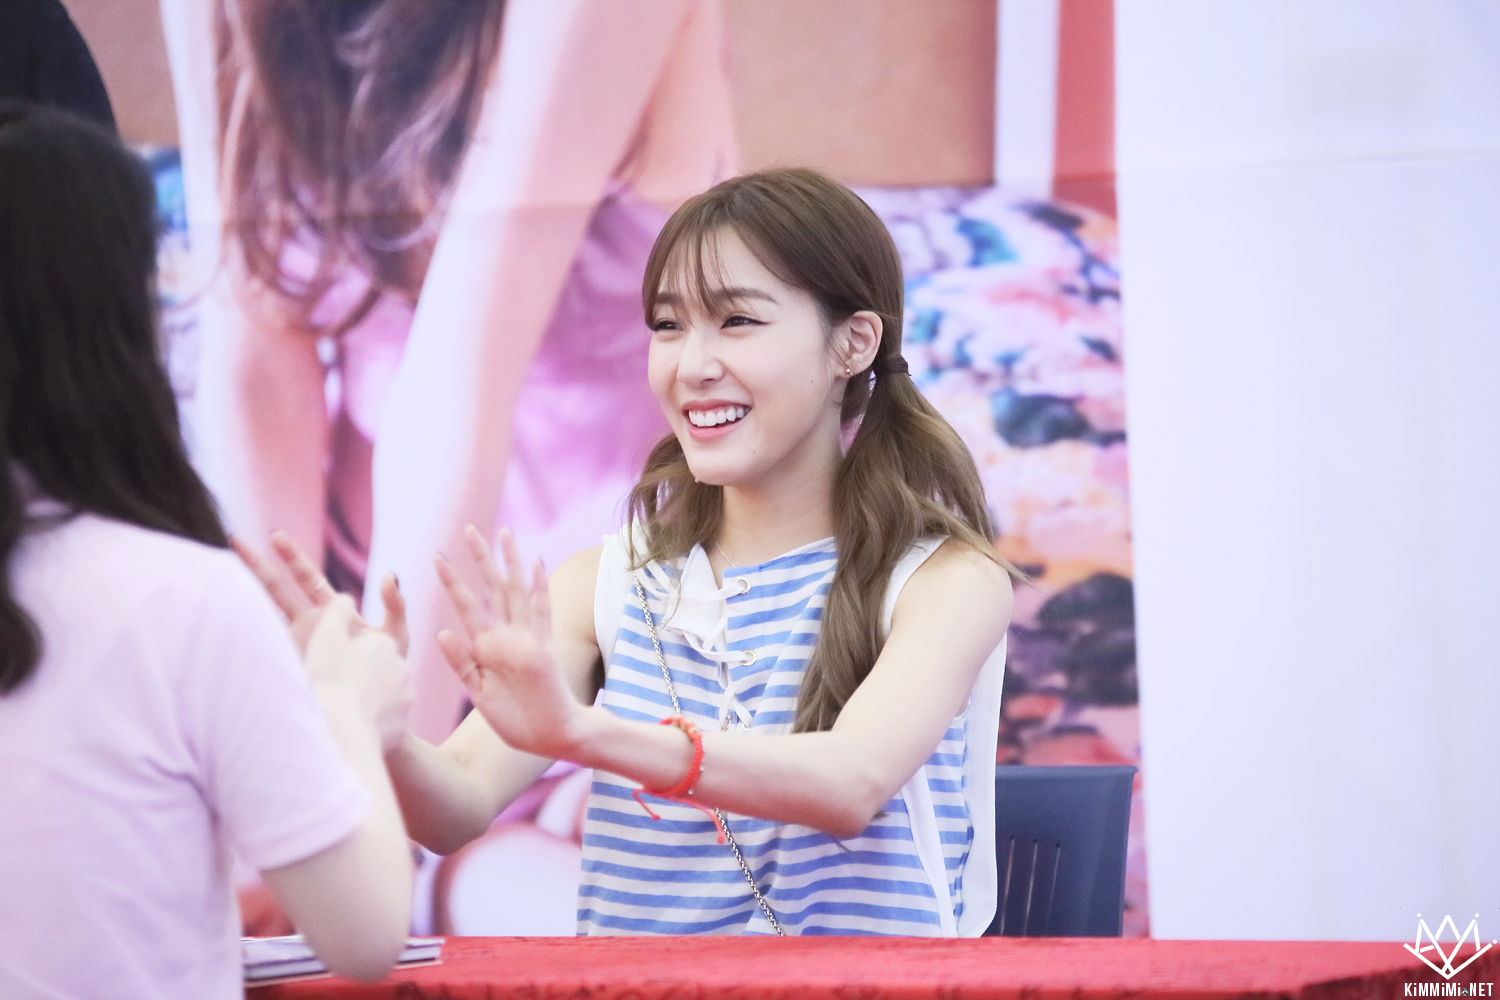 [PIC][06-06-2016]Tiffany tham dự buổi Fansign cho "I Just Wanna Dance" tại Busan vào chiều nay - Page 4 276BD4335758188D31B577